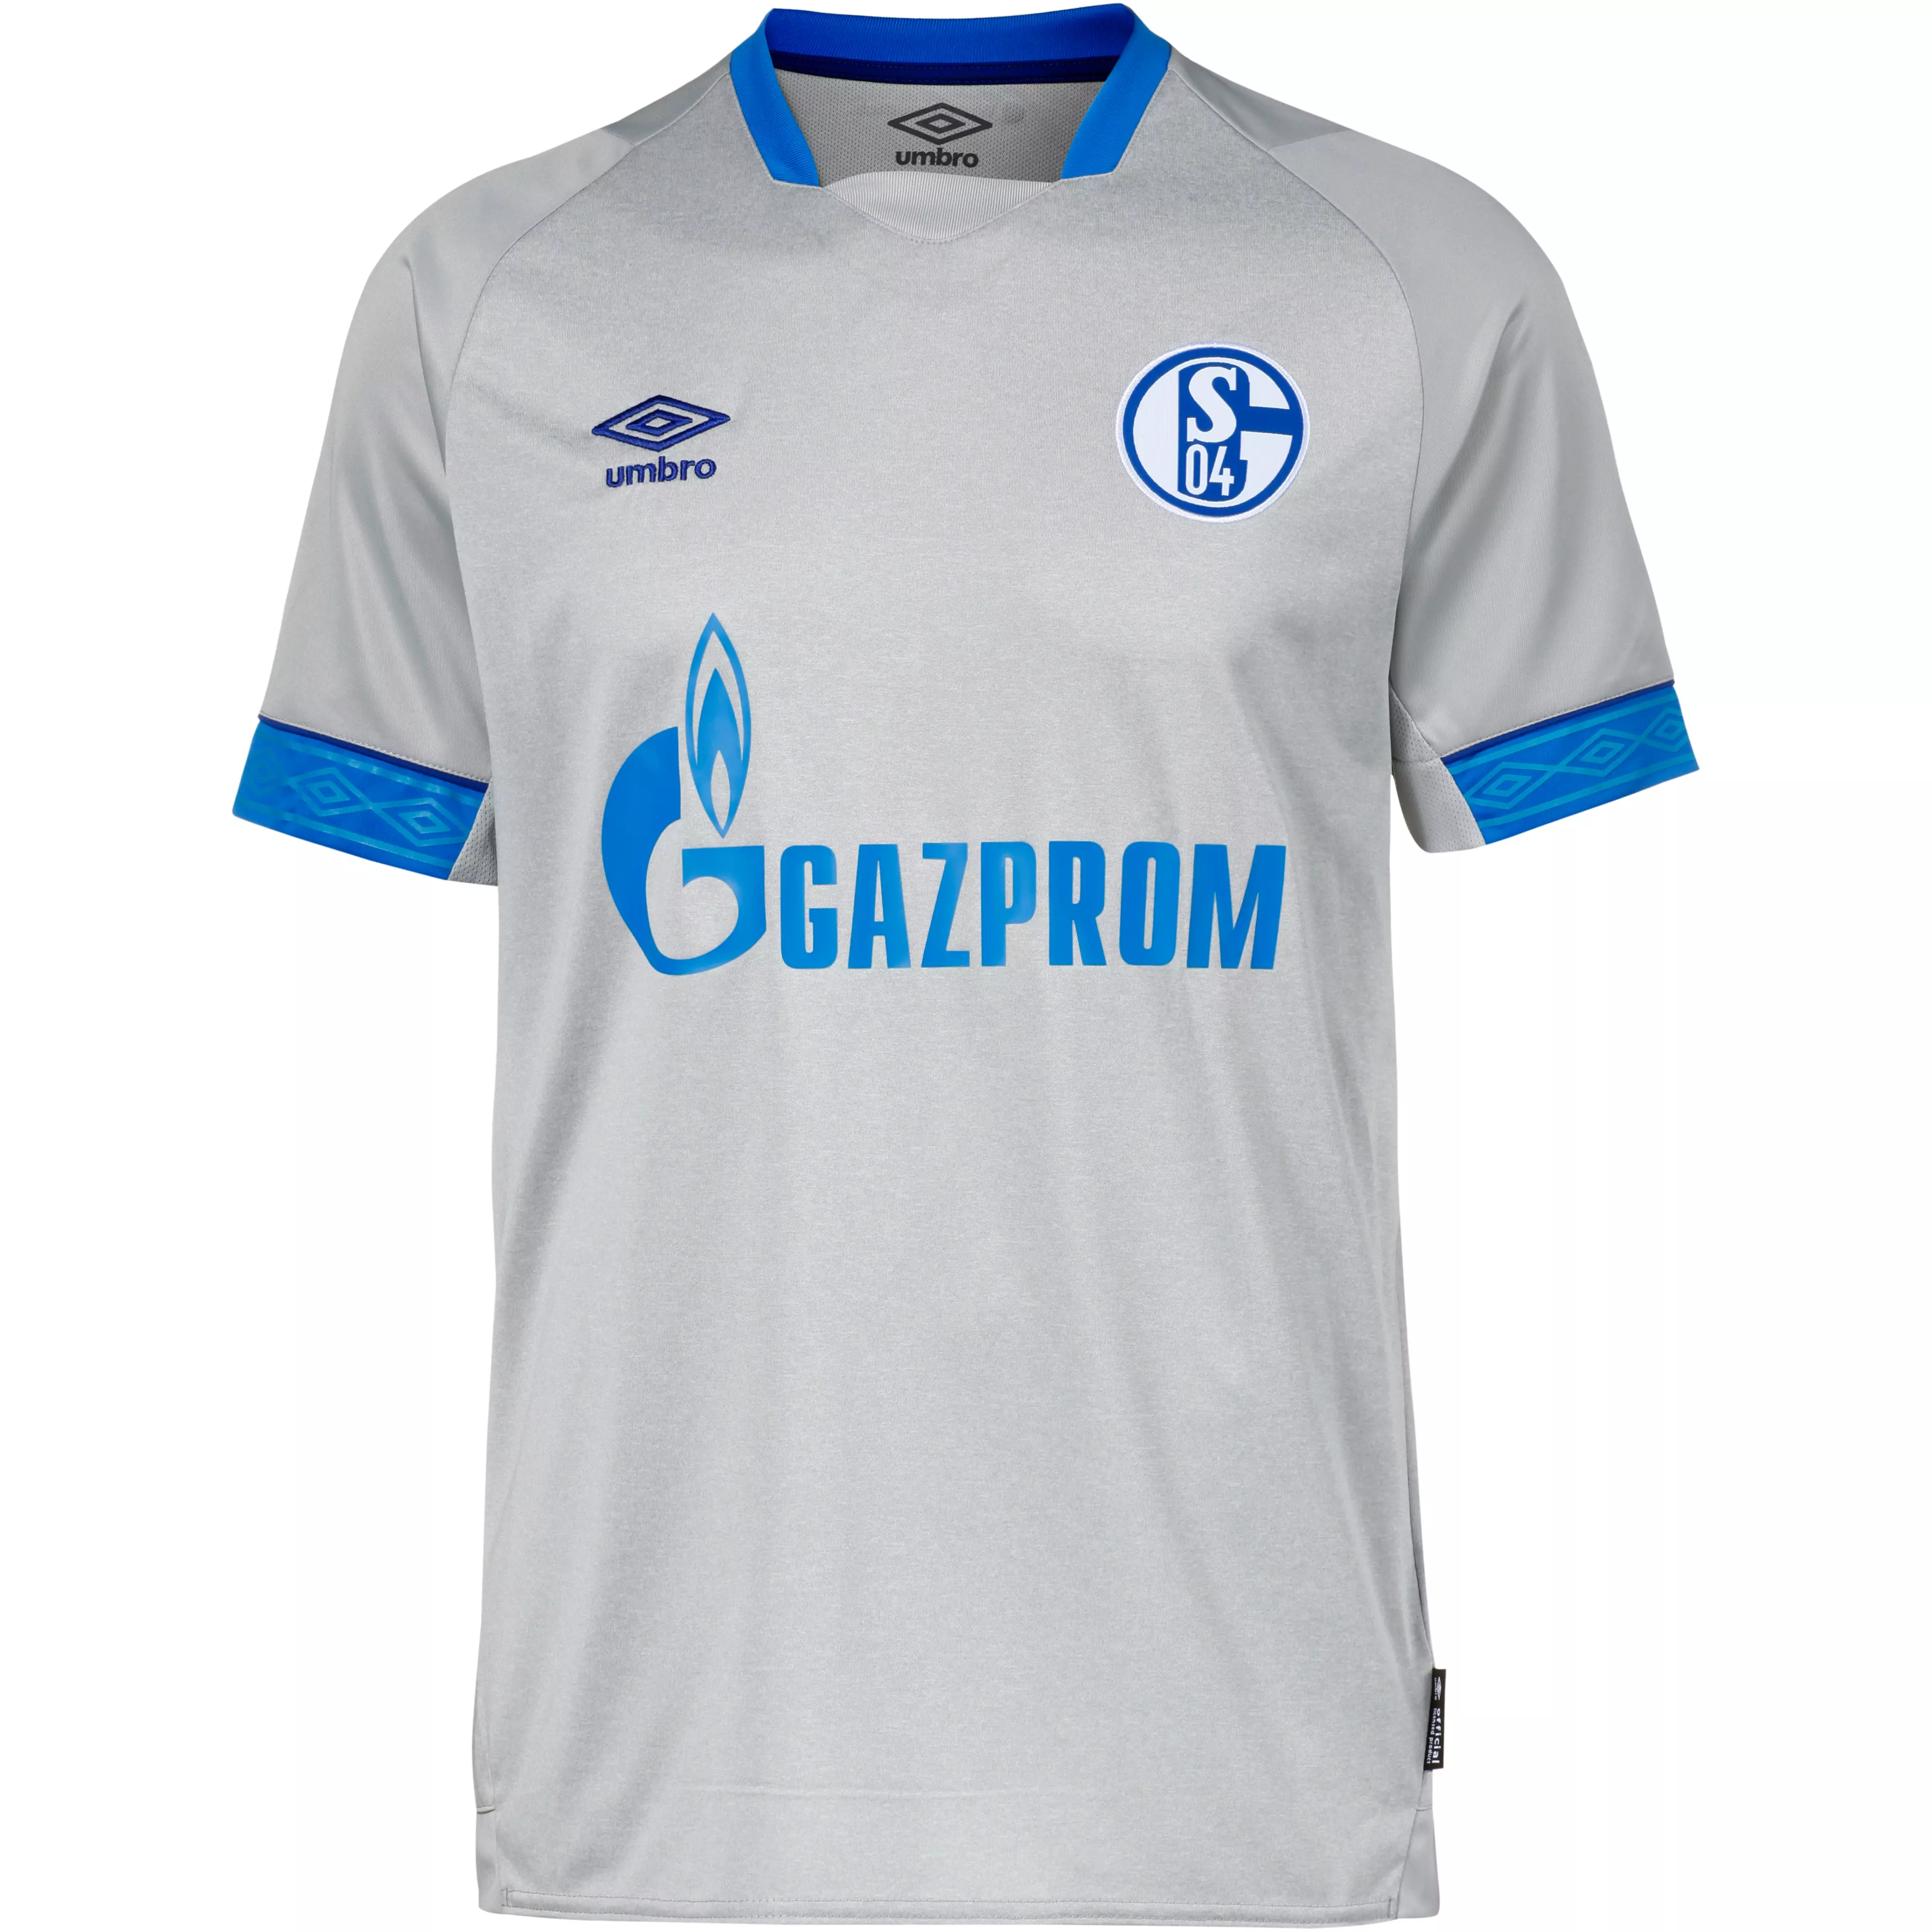 Umbro Fc Schalke 04 18 19 Auswarts Trikot Herren High Rise Electric Blue Im Online Shop Von Sportscheck Kaufen